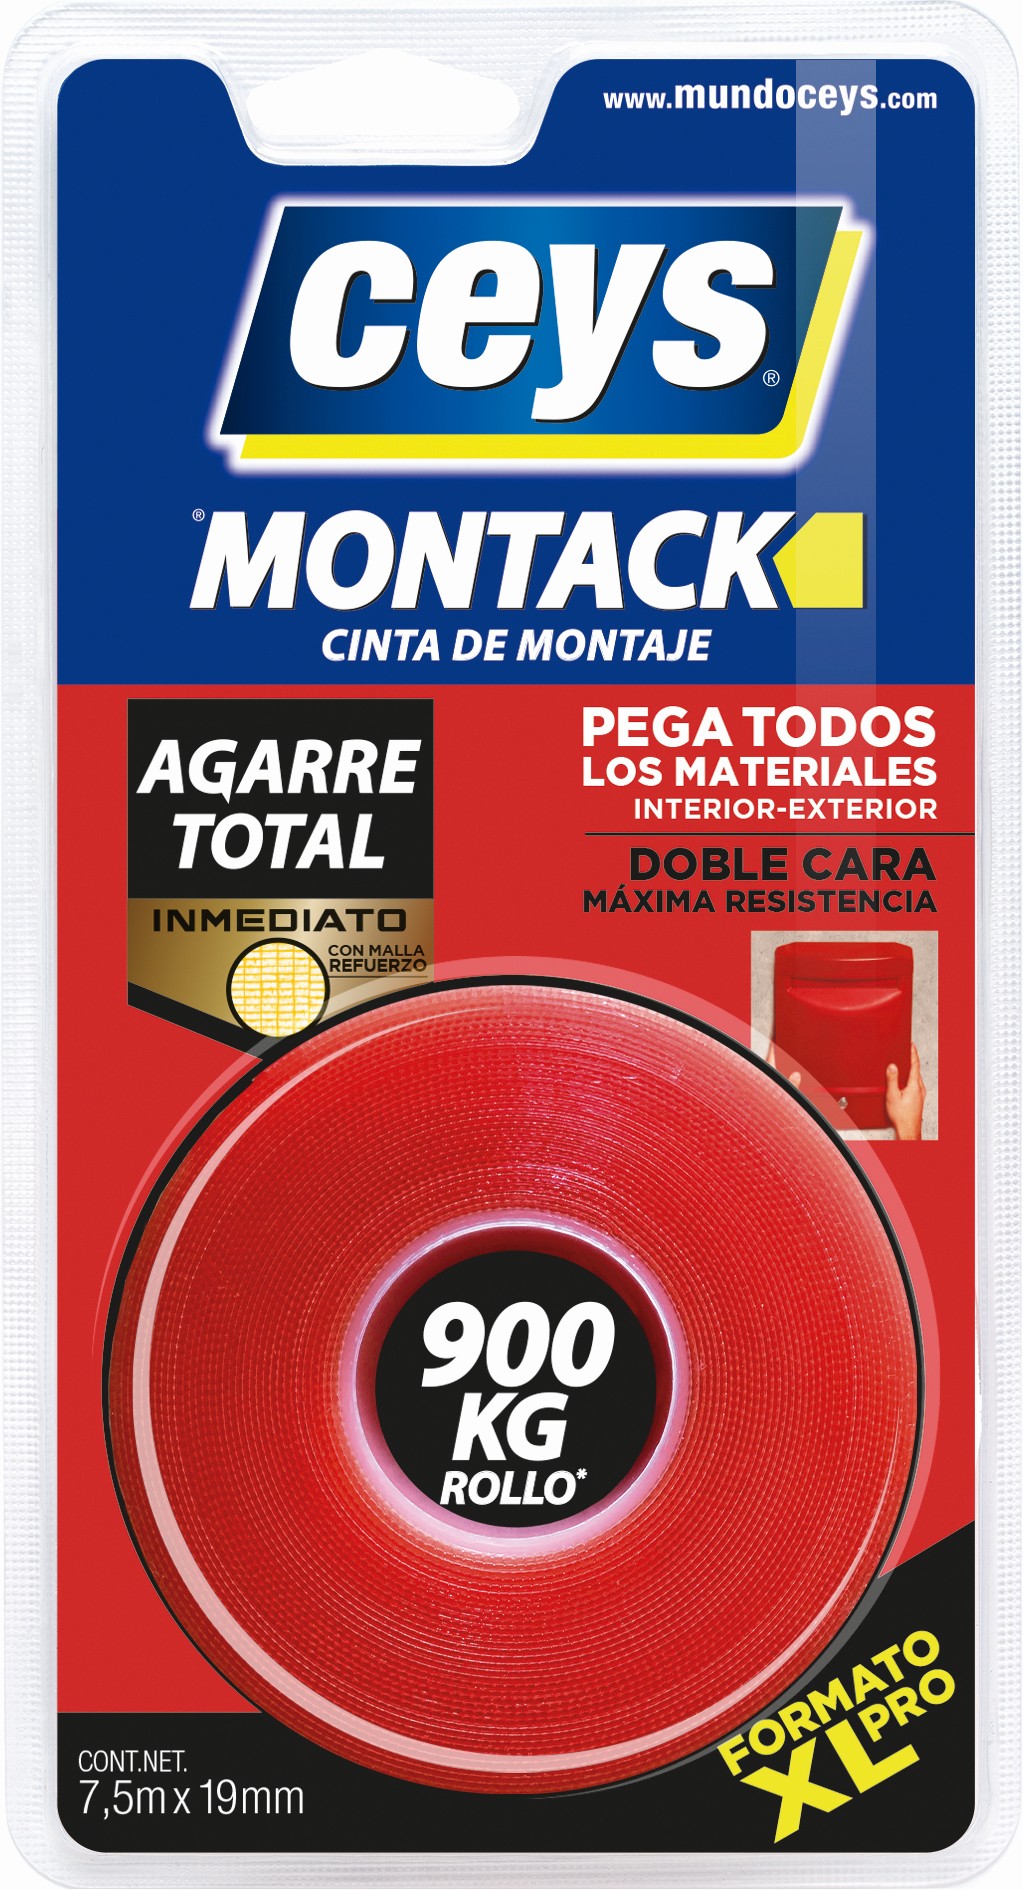 ceys - Cinta de montaje - Montack a.t - Inmediato - 7,5m x 19mm :  : Bricolaje y herramientas